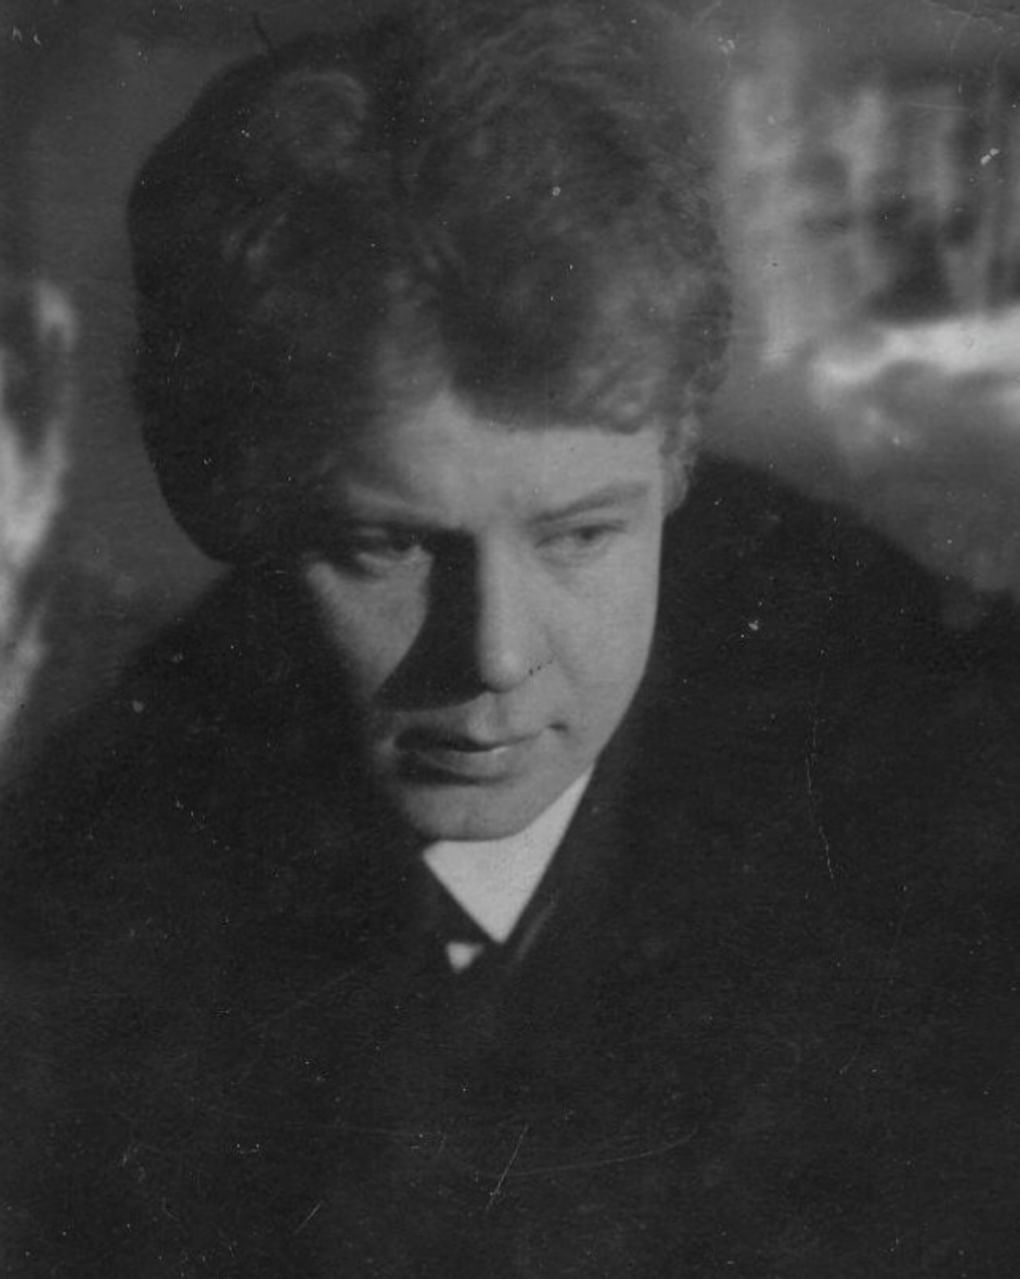 Сергей Есенин: биография жизни и трагической смерти поэта